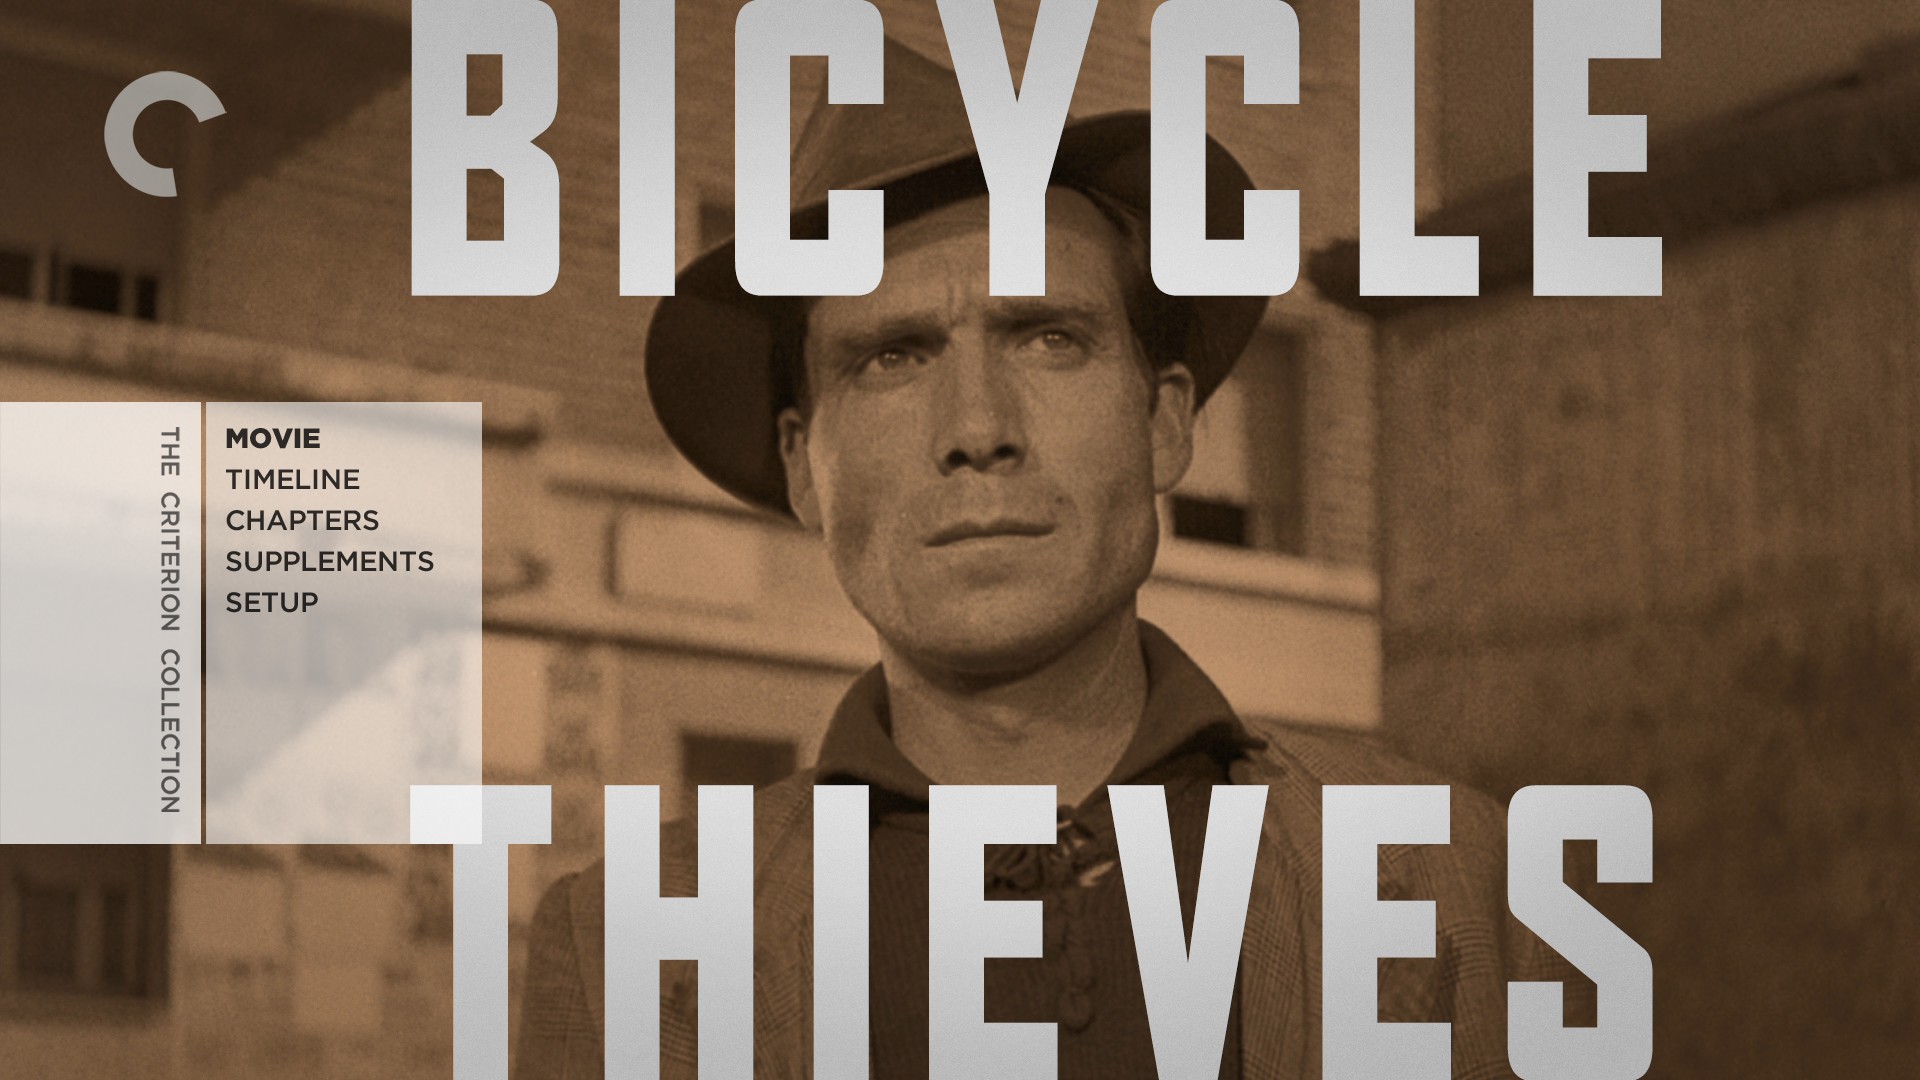 偷自行车的人/单车失窃记 [美CC版DIY集成原版无损音画.长译国配.简繁中字 全花絮中字]  Bicycle Thieves 1948 CC Blu-ray 1080p AVC LPCM 1.0-blucook#303@CHDBits [49.63 GB ]-2.jpg